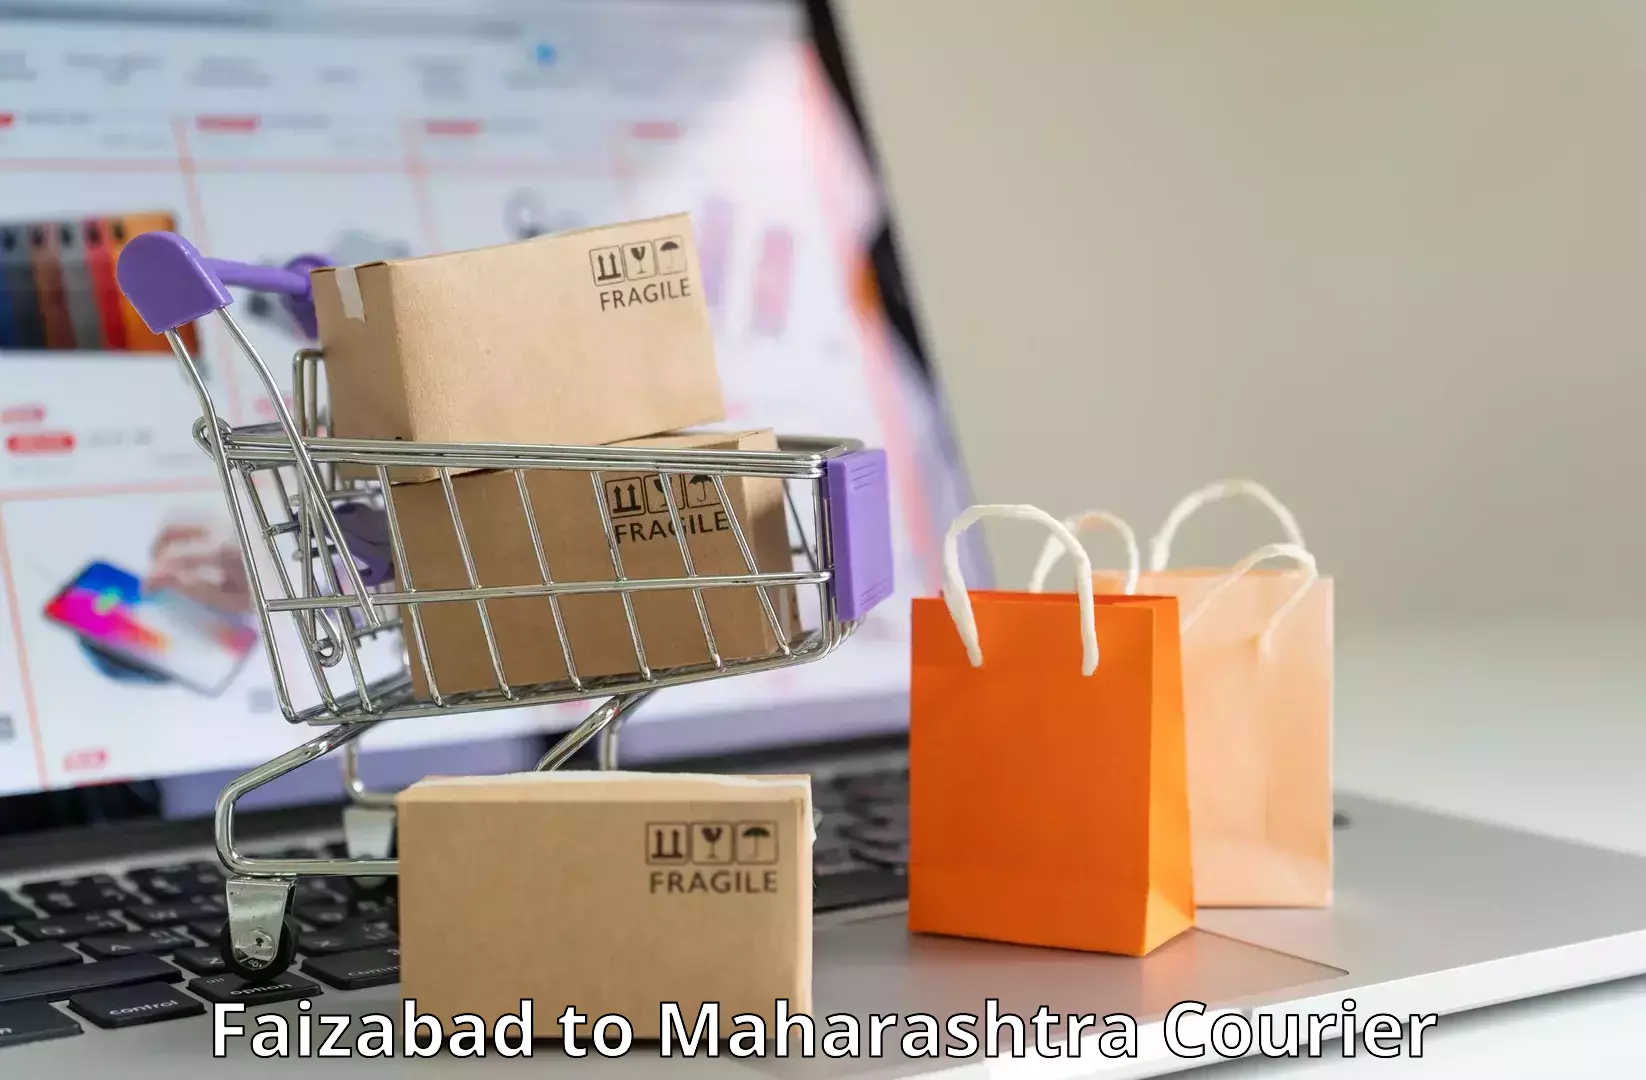 Enhanced shipping experience in Faizabad to Maharashtra